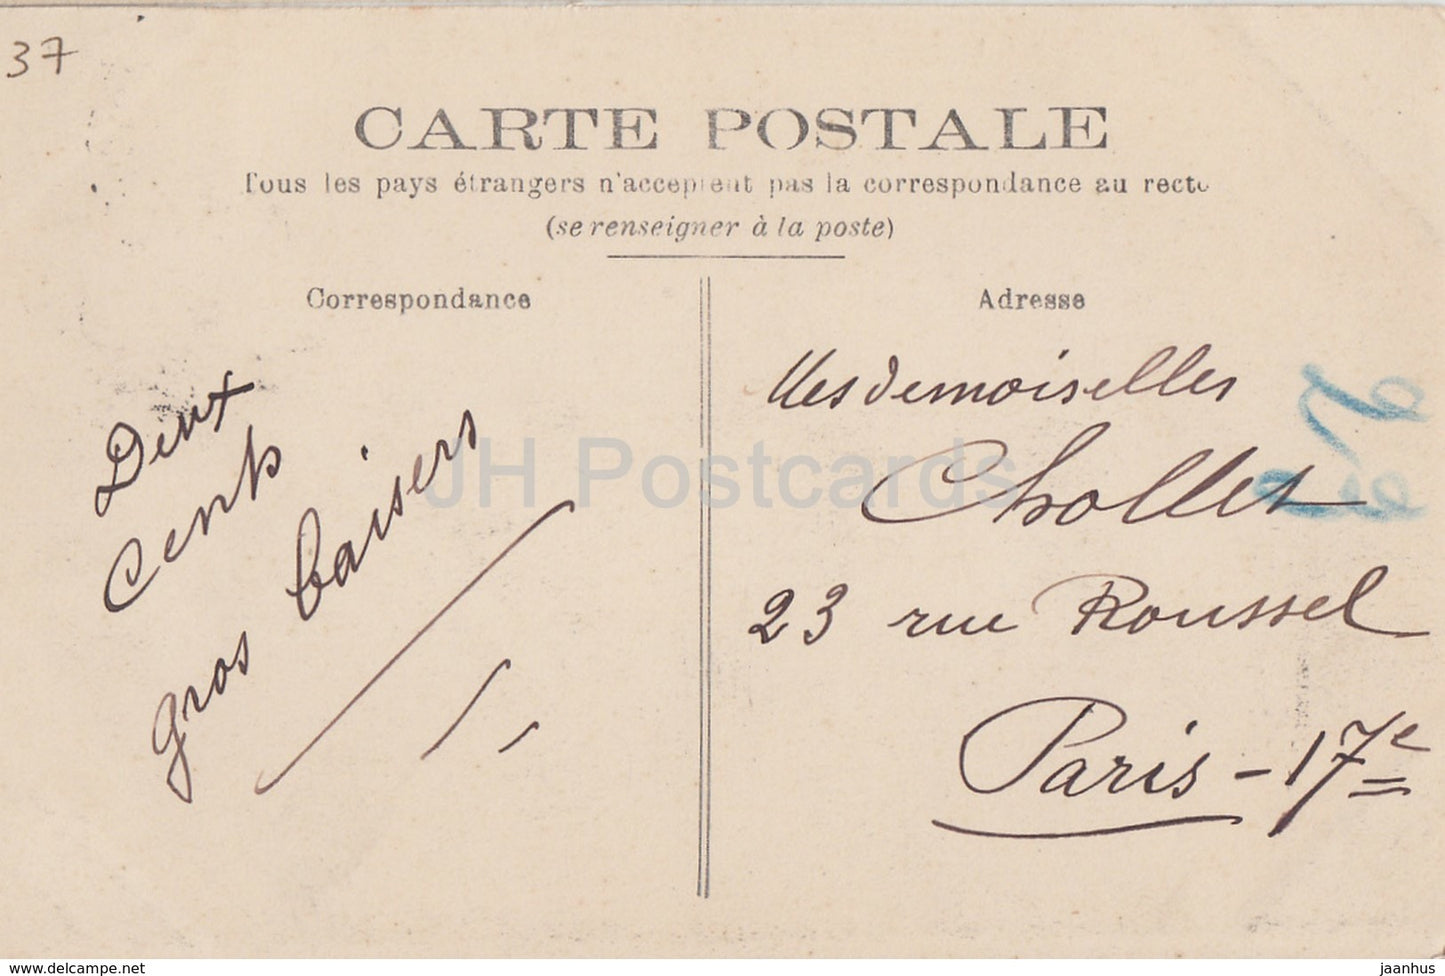 Loches - Le Chateau et l'Eglise Saint Ours - castle - 27 - old postcard - 1906 - France - used